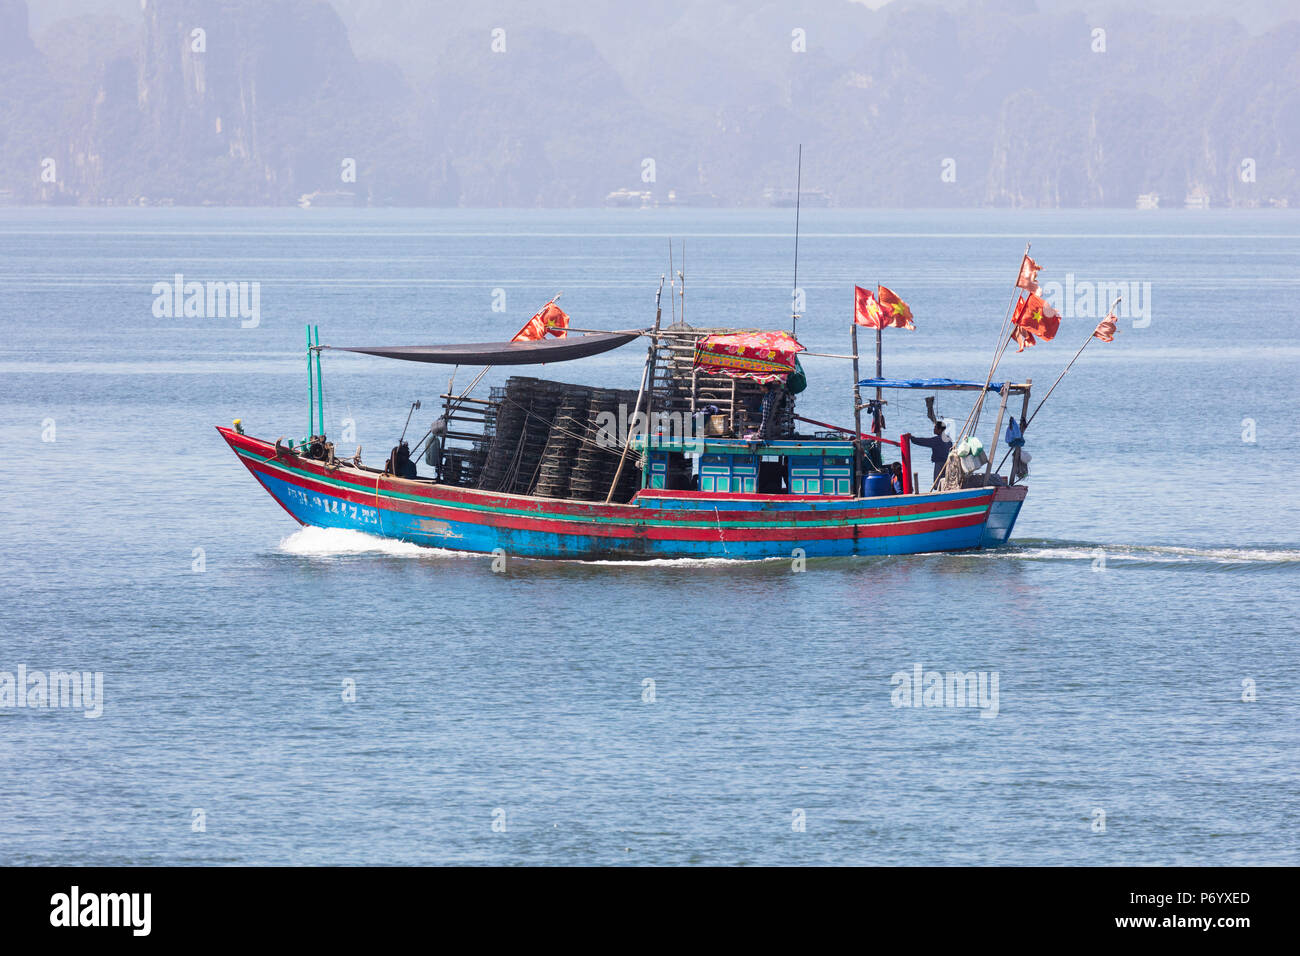 Bateau de pêche colorés avec des drapeaux, la baie d'Halong, Province de Quang Ninh, Vietnam, Asie du Sud-Est, du Nord-Est Banque D'Images